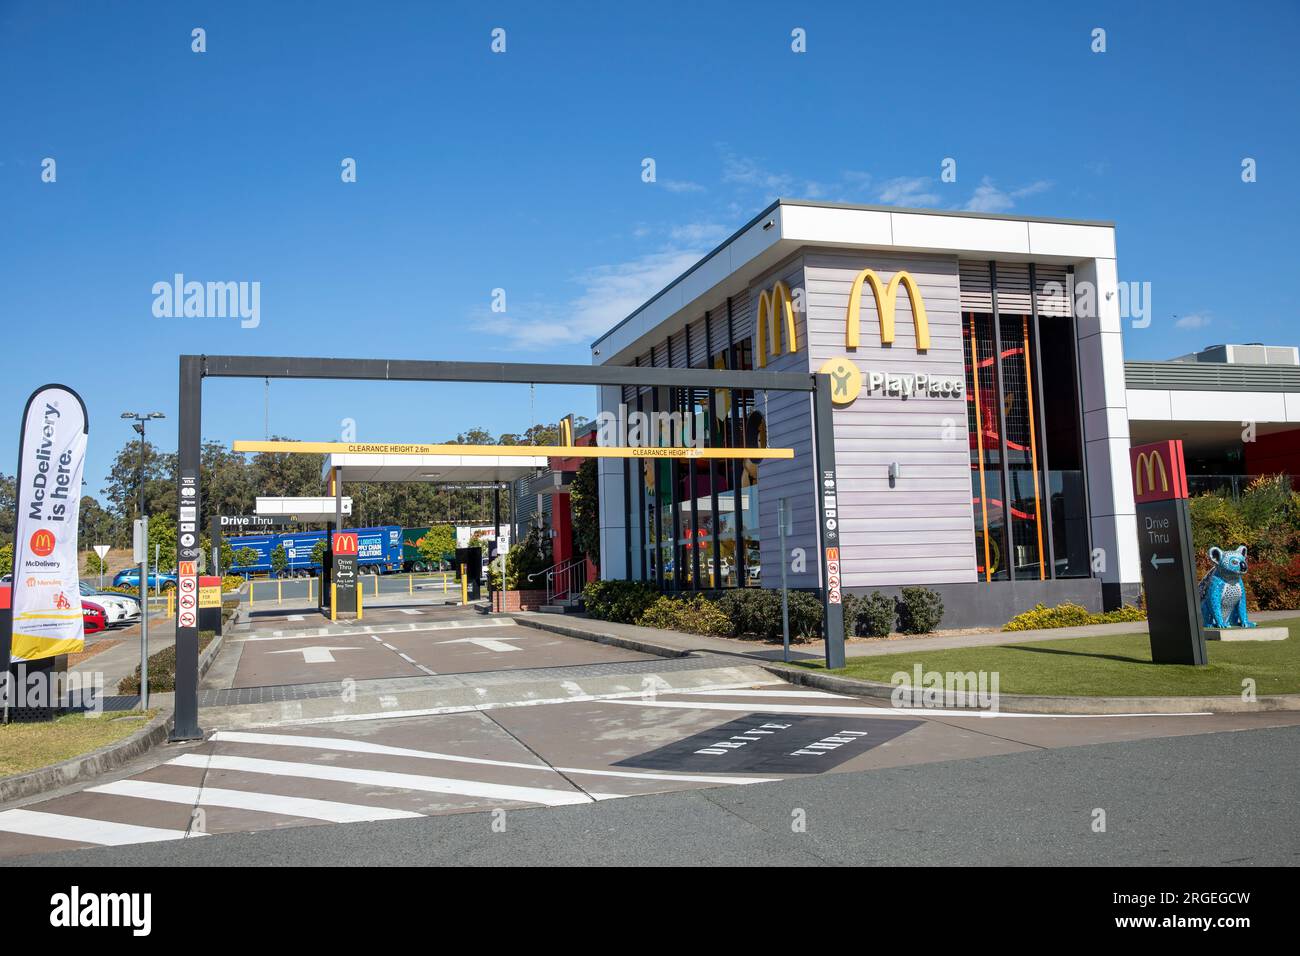 Service Area und Raststätte Port Macquarie, McDonald's Restaurant, für Fahrer zum Ausruhen und Essen am Pacific Highway zwischen Sydney und Brisbane Stockfoto